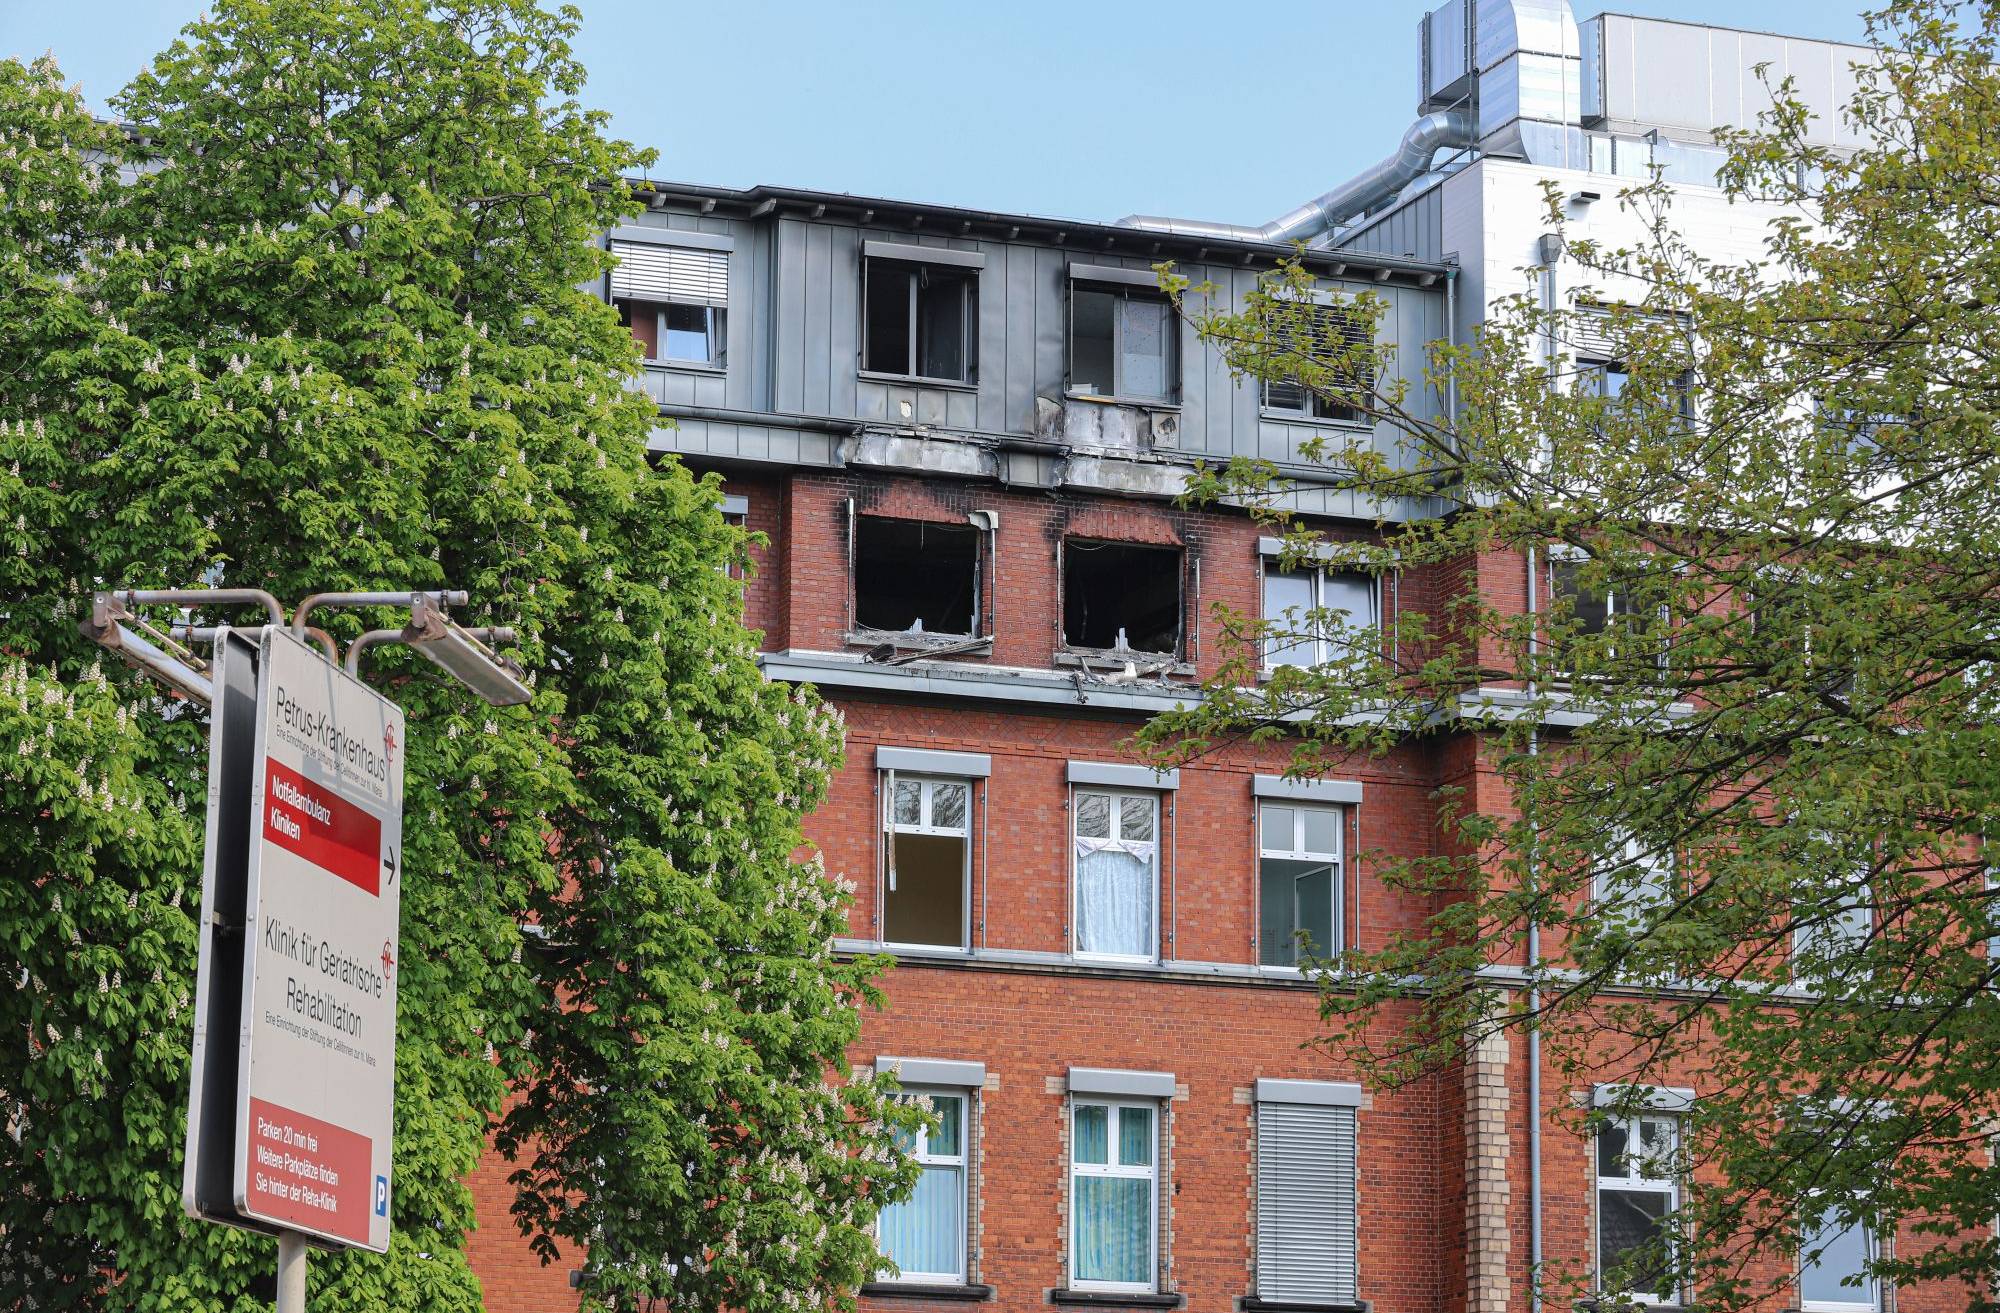  Das Petrus-Krankenhaus an der Carnaper Straße. Die Auswirkungen des Brandes sind deutlich zu sehen. 